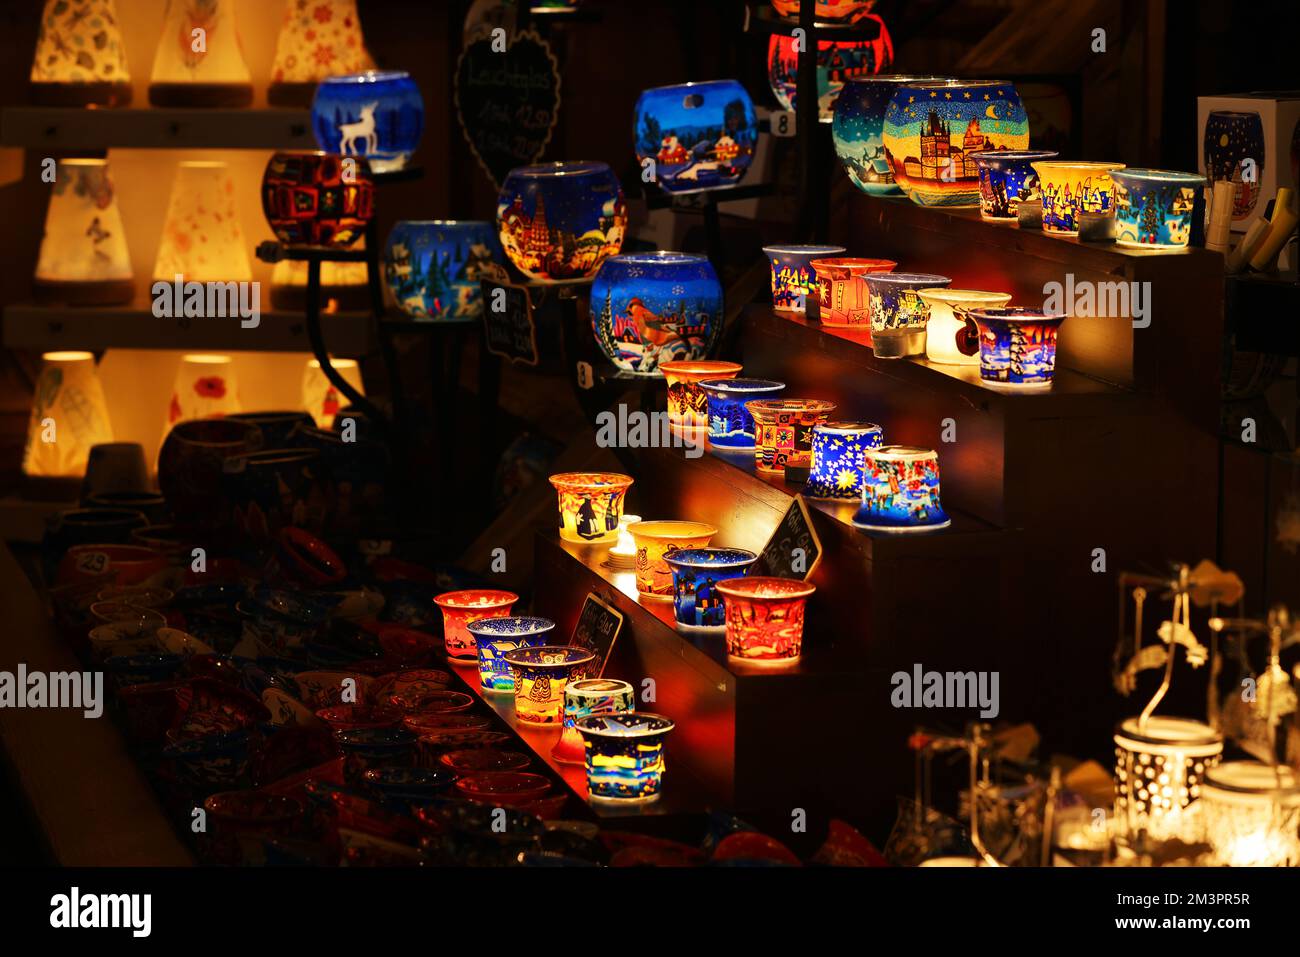 Teelichter, Glas, Nürnberg, Nürnberger Weihnachtsmarkt, Nürnberger Christkindlesmarkt, Mit Engeln, Anhänger, Kugeln, Glühwein und vielen Grillsachen! Foto Stock